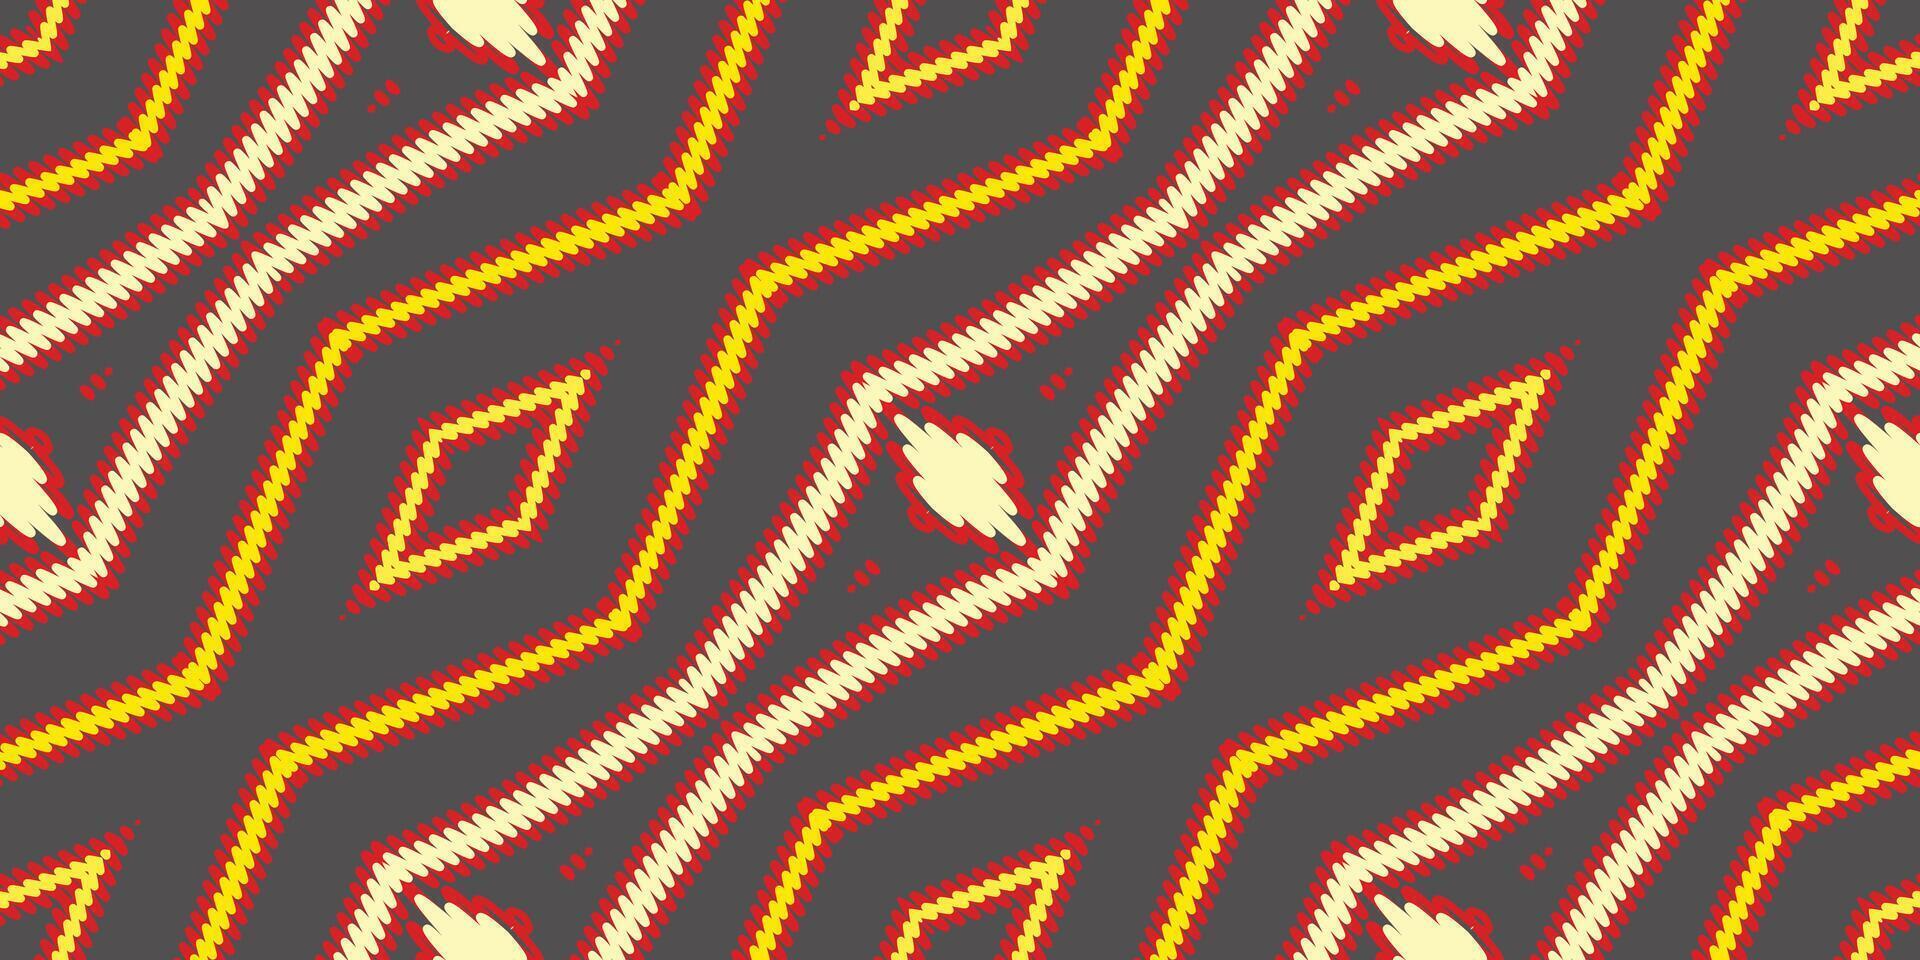 Krawatte Farbstoff Muster nahtlos australisch Ureinwohner Muster Motiv Stickerei, Ikat Stickerei Vektor Design zum drucken skandinavisch Muster Saree ethnisch Geburt Zigeuner Muster